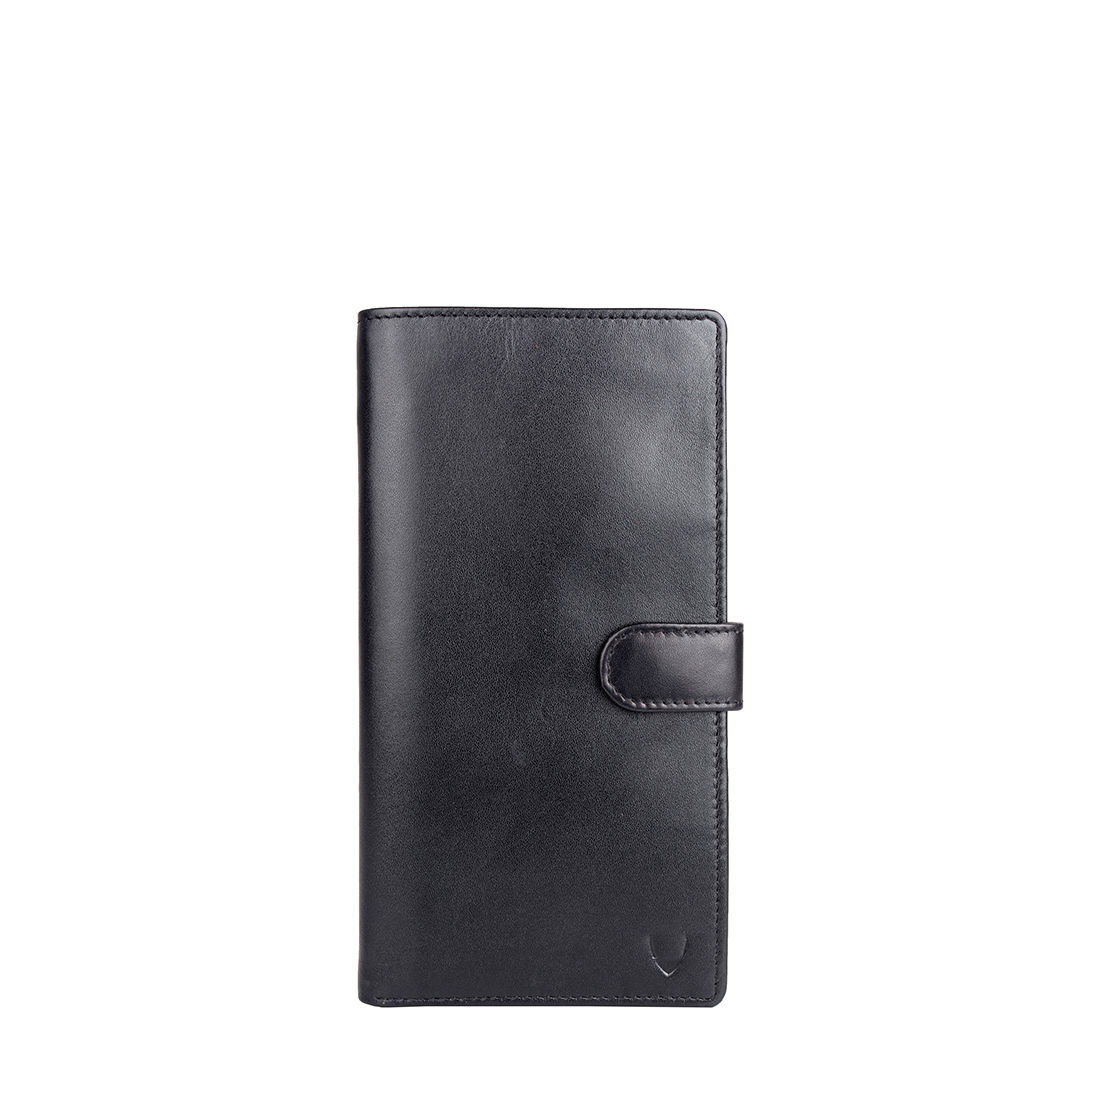 Buy Hidesign 001 (Rf) Black Passport Holder Online